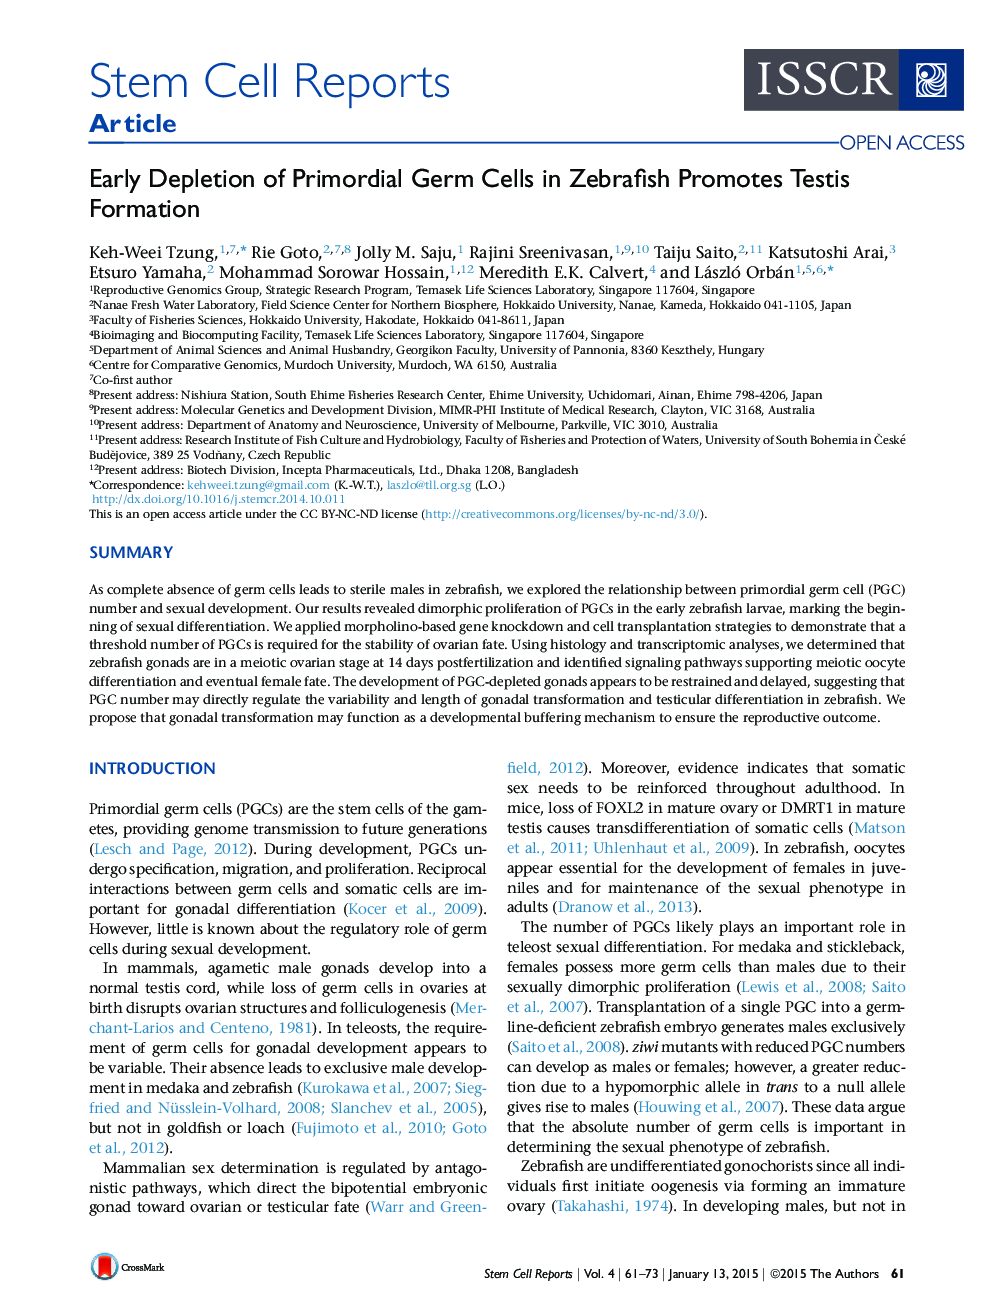 Early Depletion of Primordial Germ Cells in Zebrafish Promotes Testis Formation 